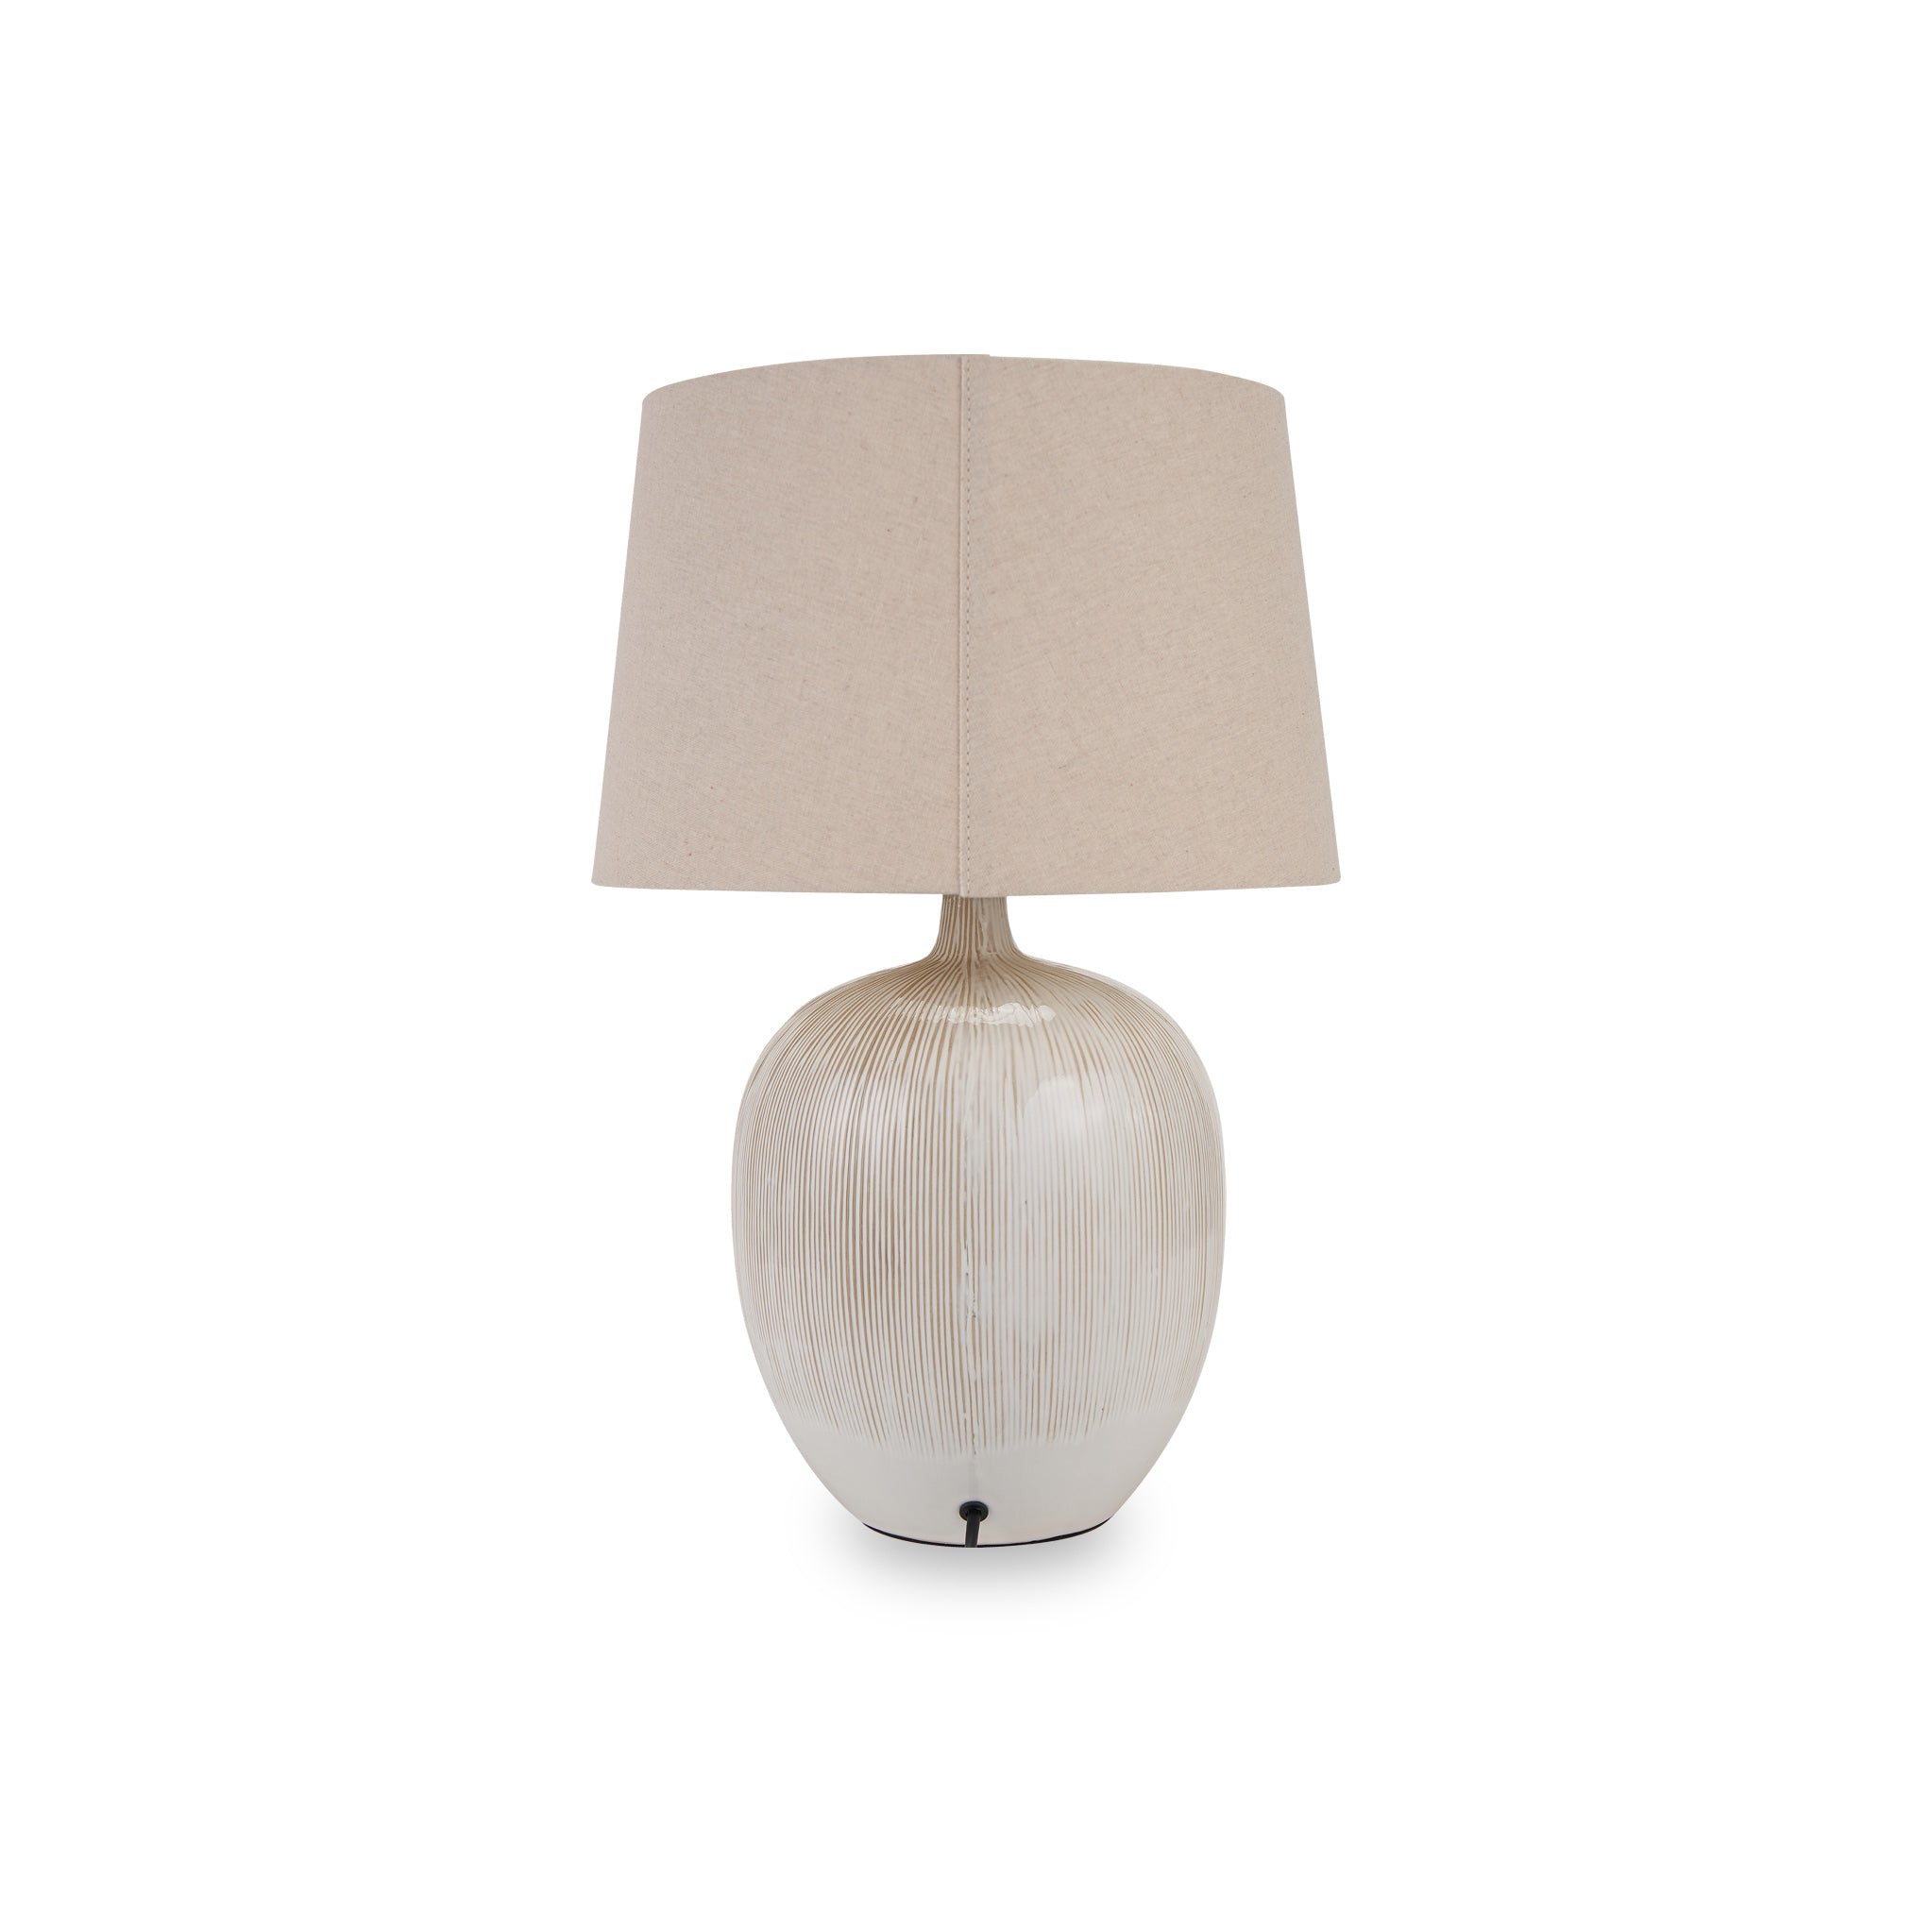 Greta Cream Textured Ceramic Table Lamp For Scandi Living Rooms